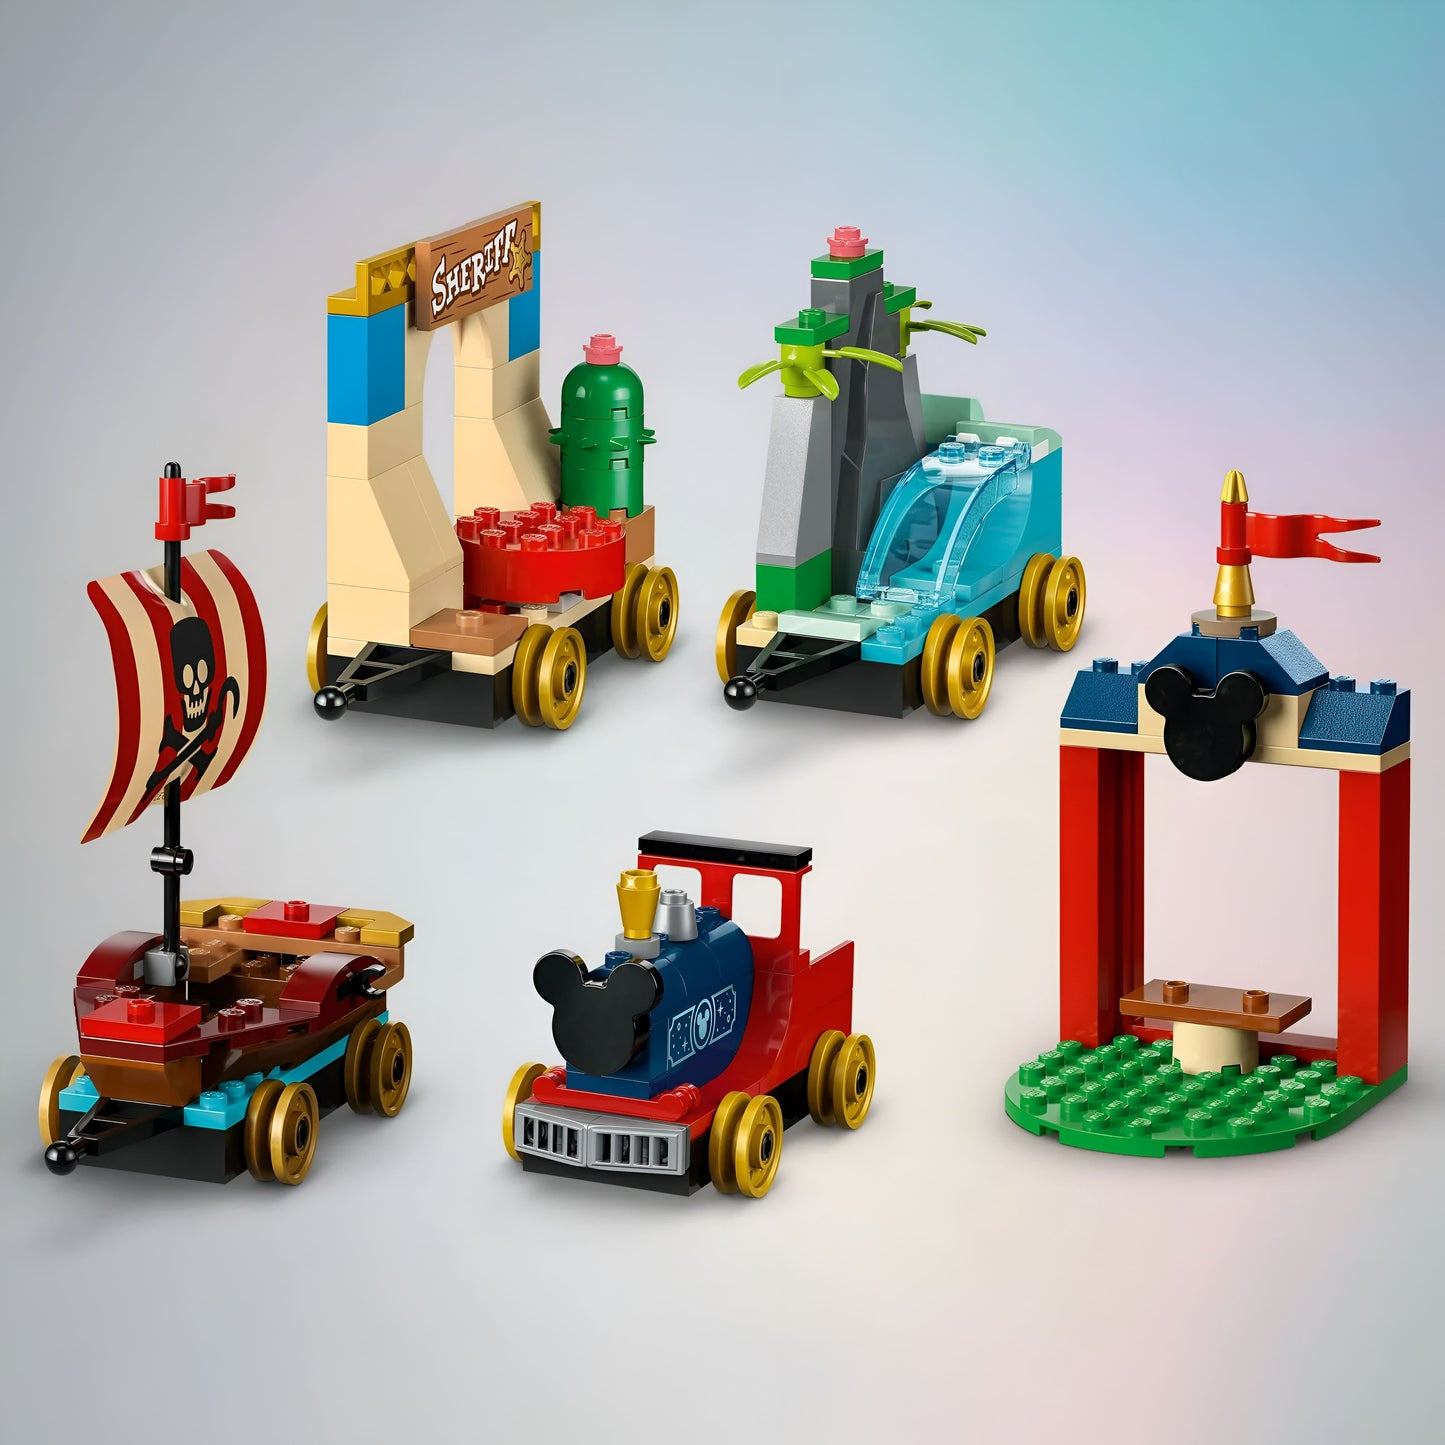 LEGO Disney 100 Tren de Celebración 43212 Juguete de construcción, juego imaginativo, divertido regalo de cumpleaños para niños en edad preescolar a partir de 4 años, 6 minifiguras de Disney: Moana, Woody, Peter Pan, Campanita, Mickey y Minnie Mouse